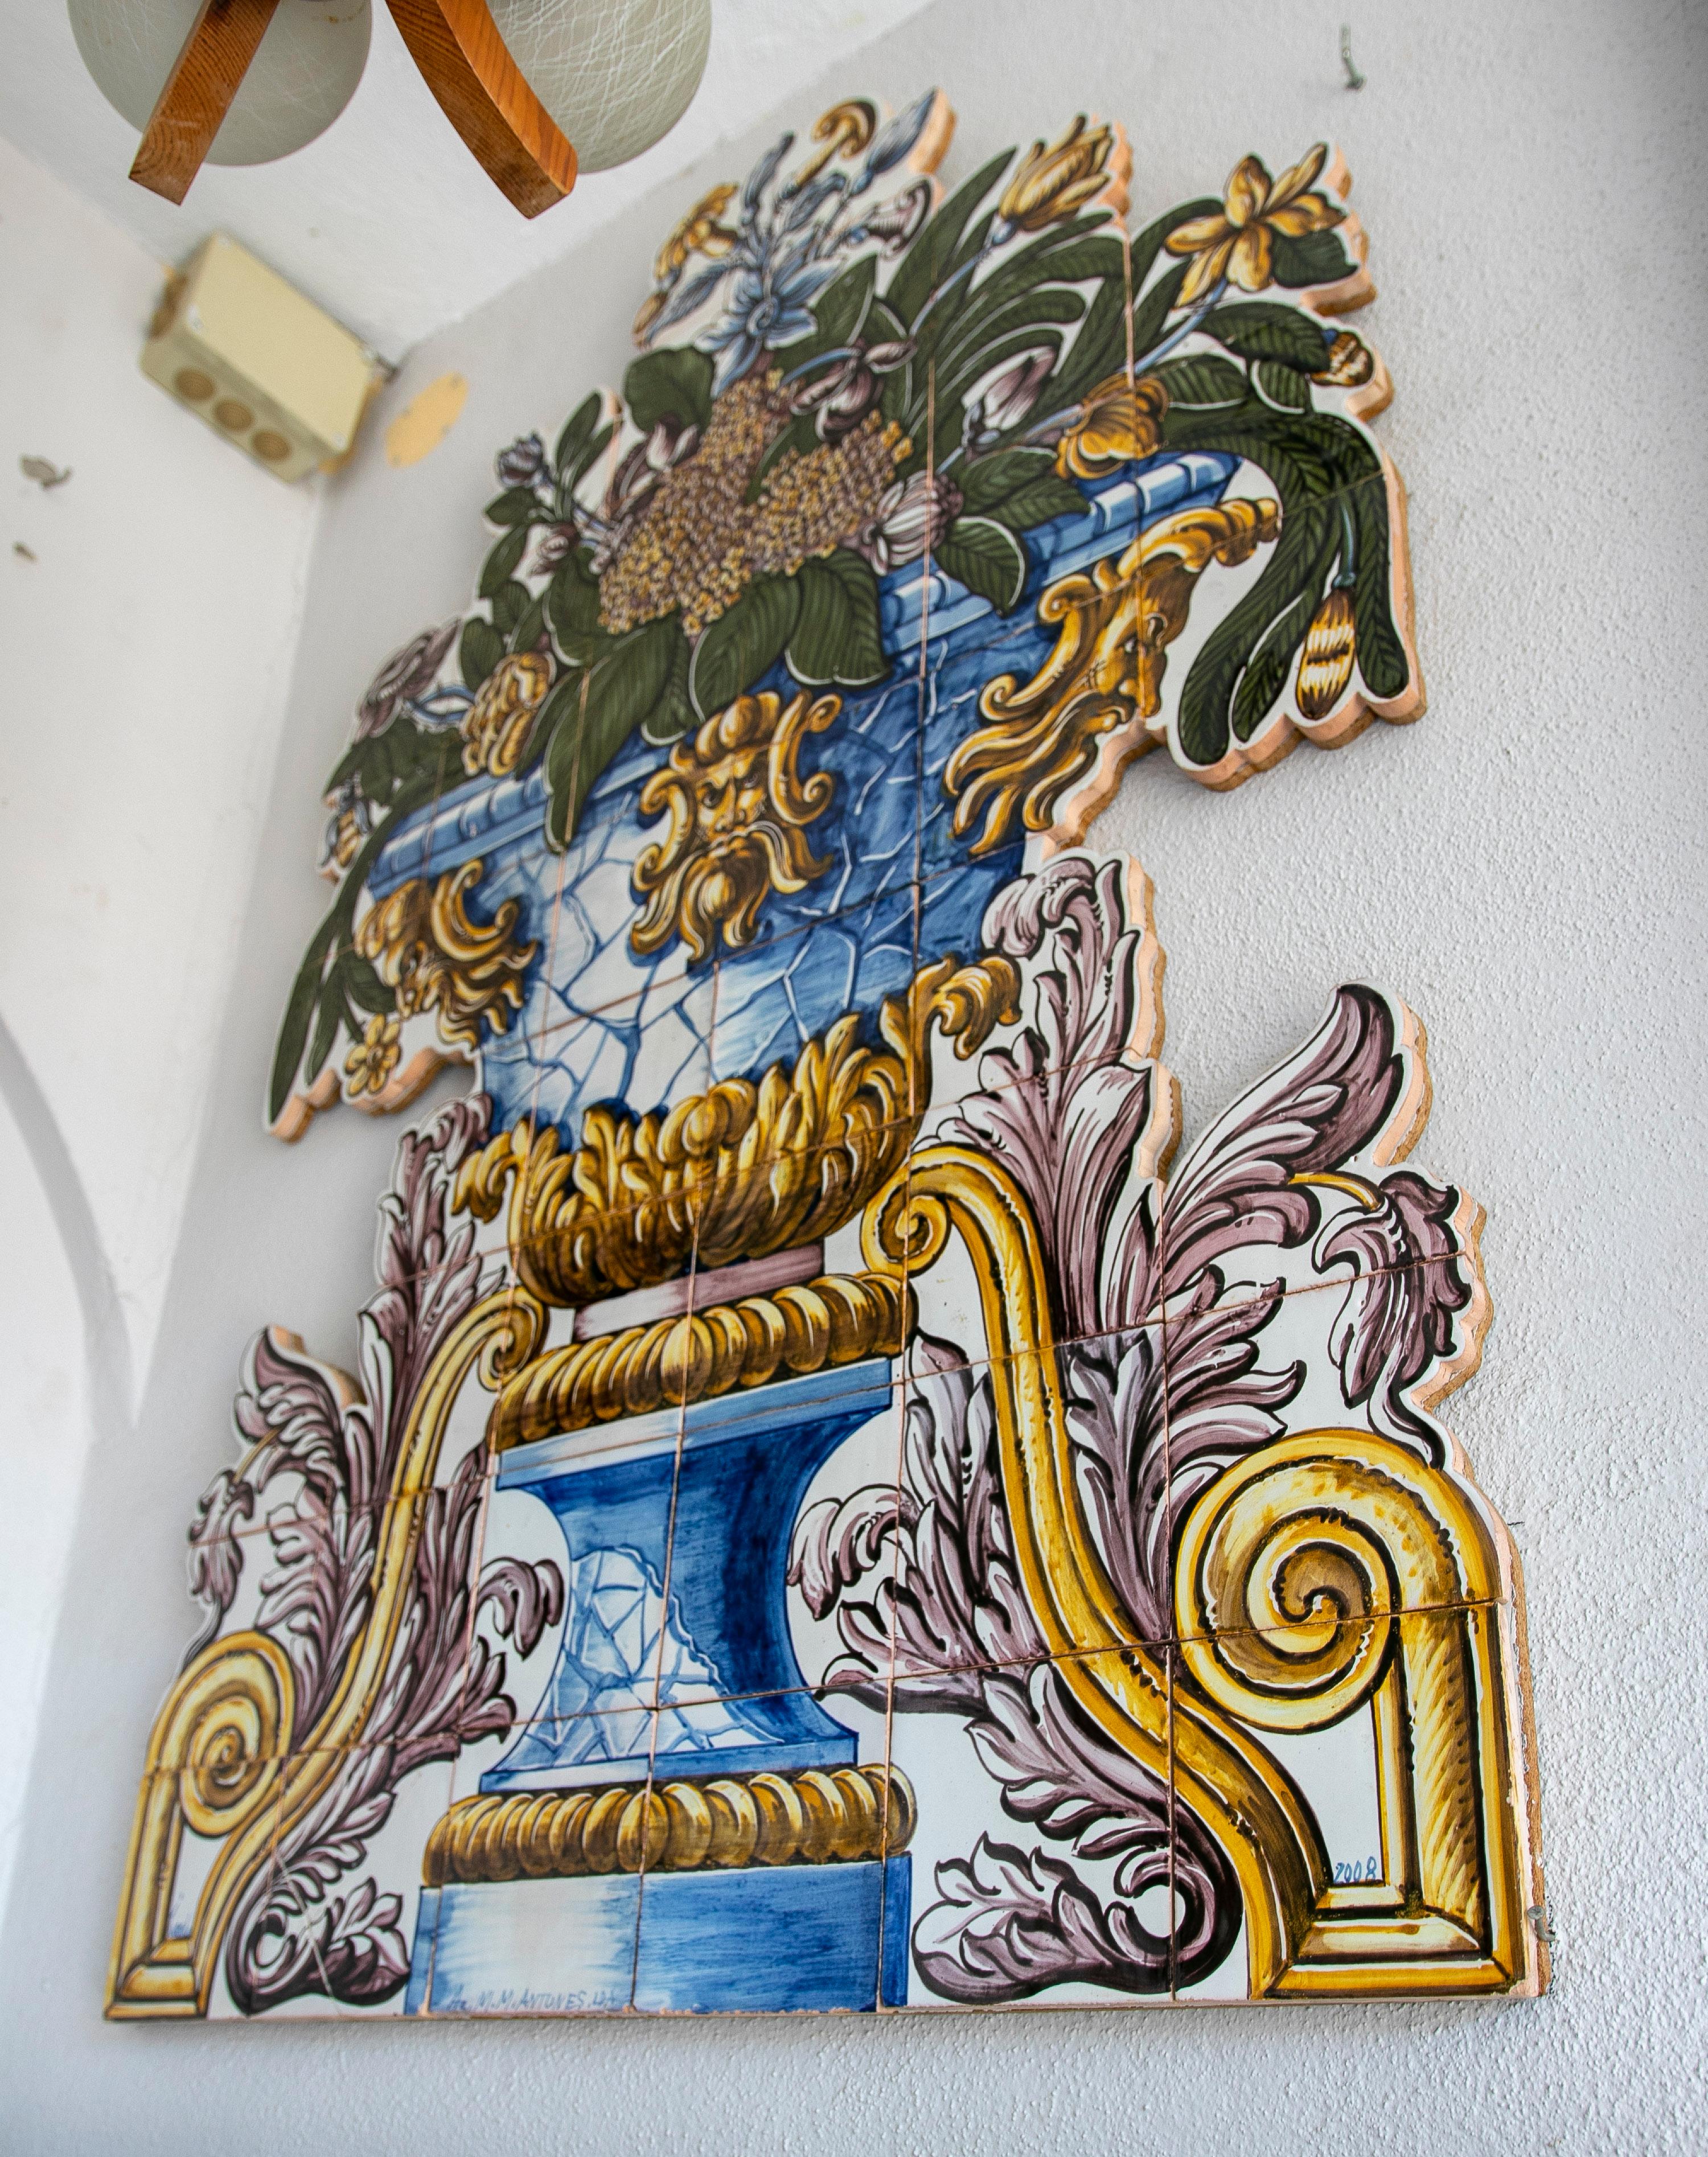 panneau en céramique émaillée peint à la main au Portugal dans les années 1990. Jardinière de fleurs de style Rococo tardif.